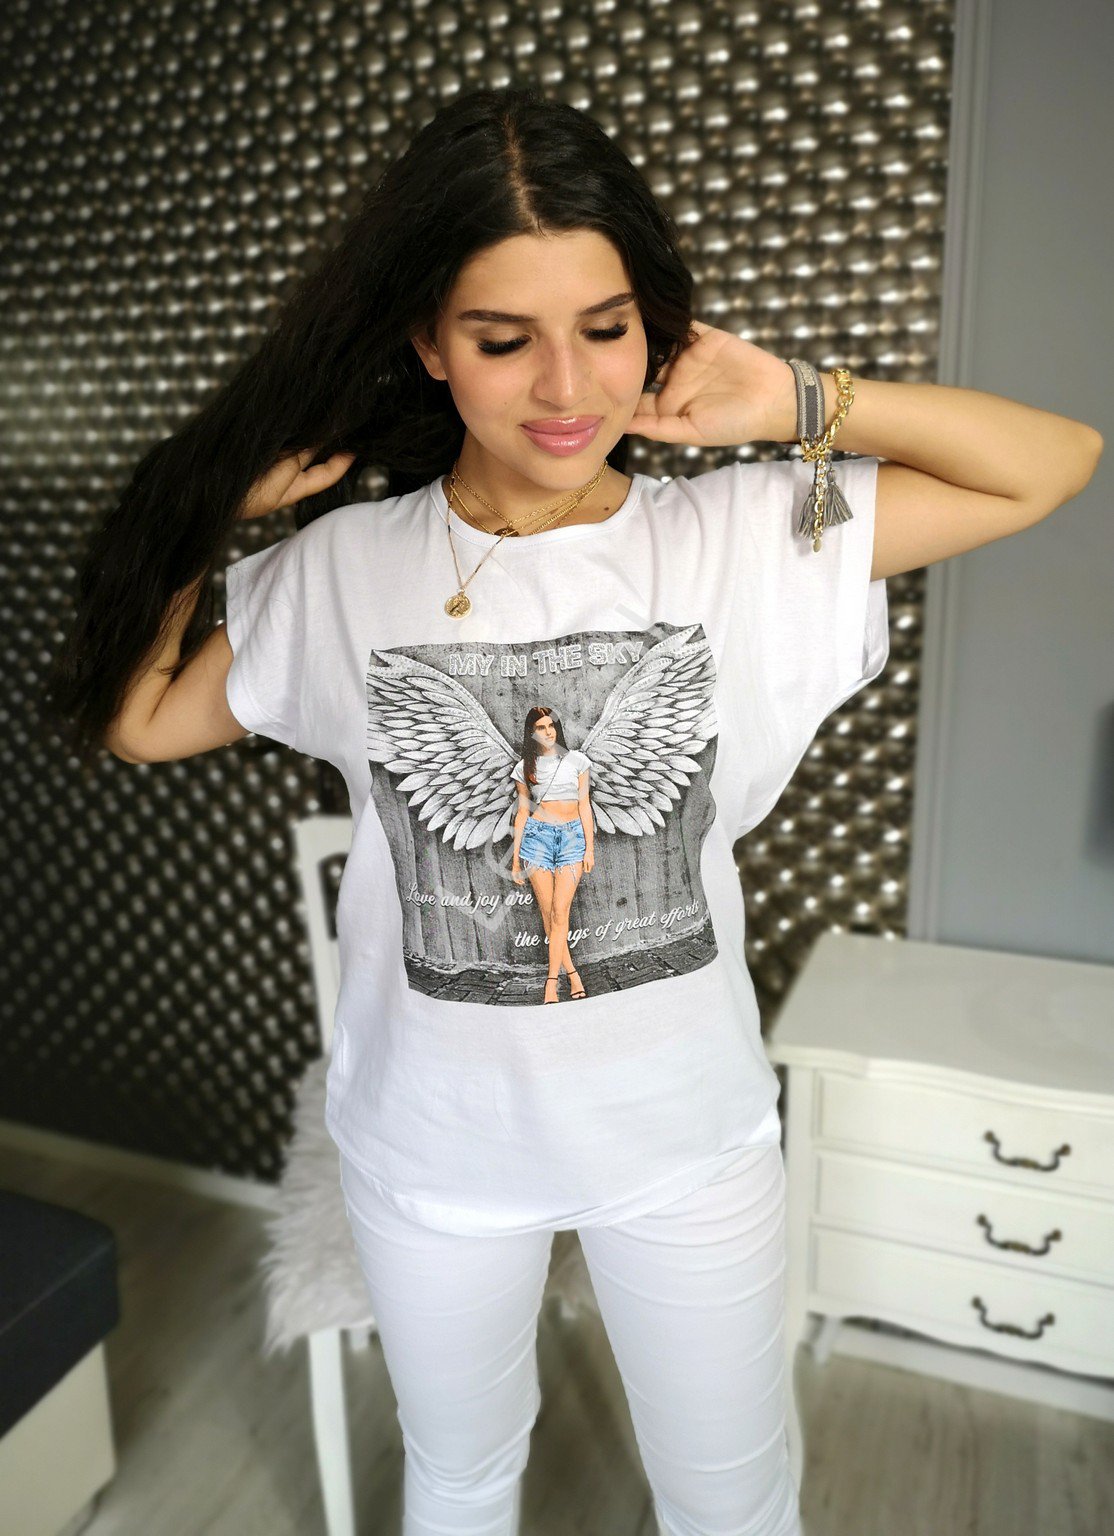 Biała koszulka My in the sky, bawełniany t-shirt plus size z skrzydłami